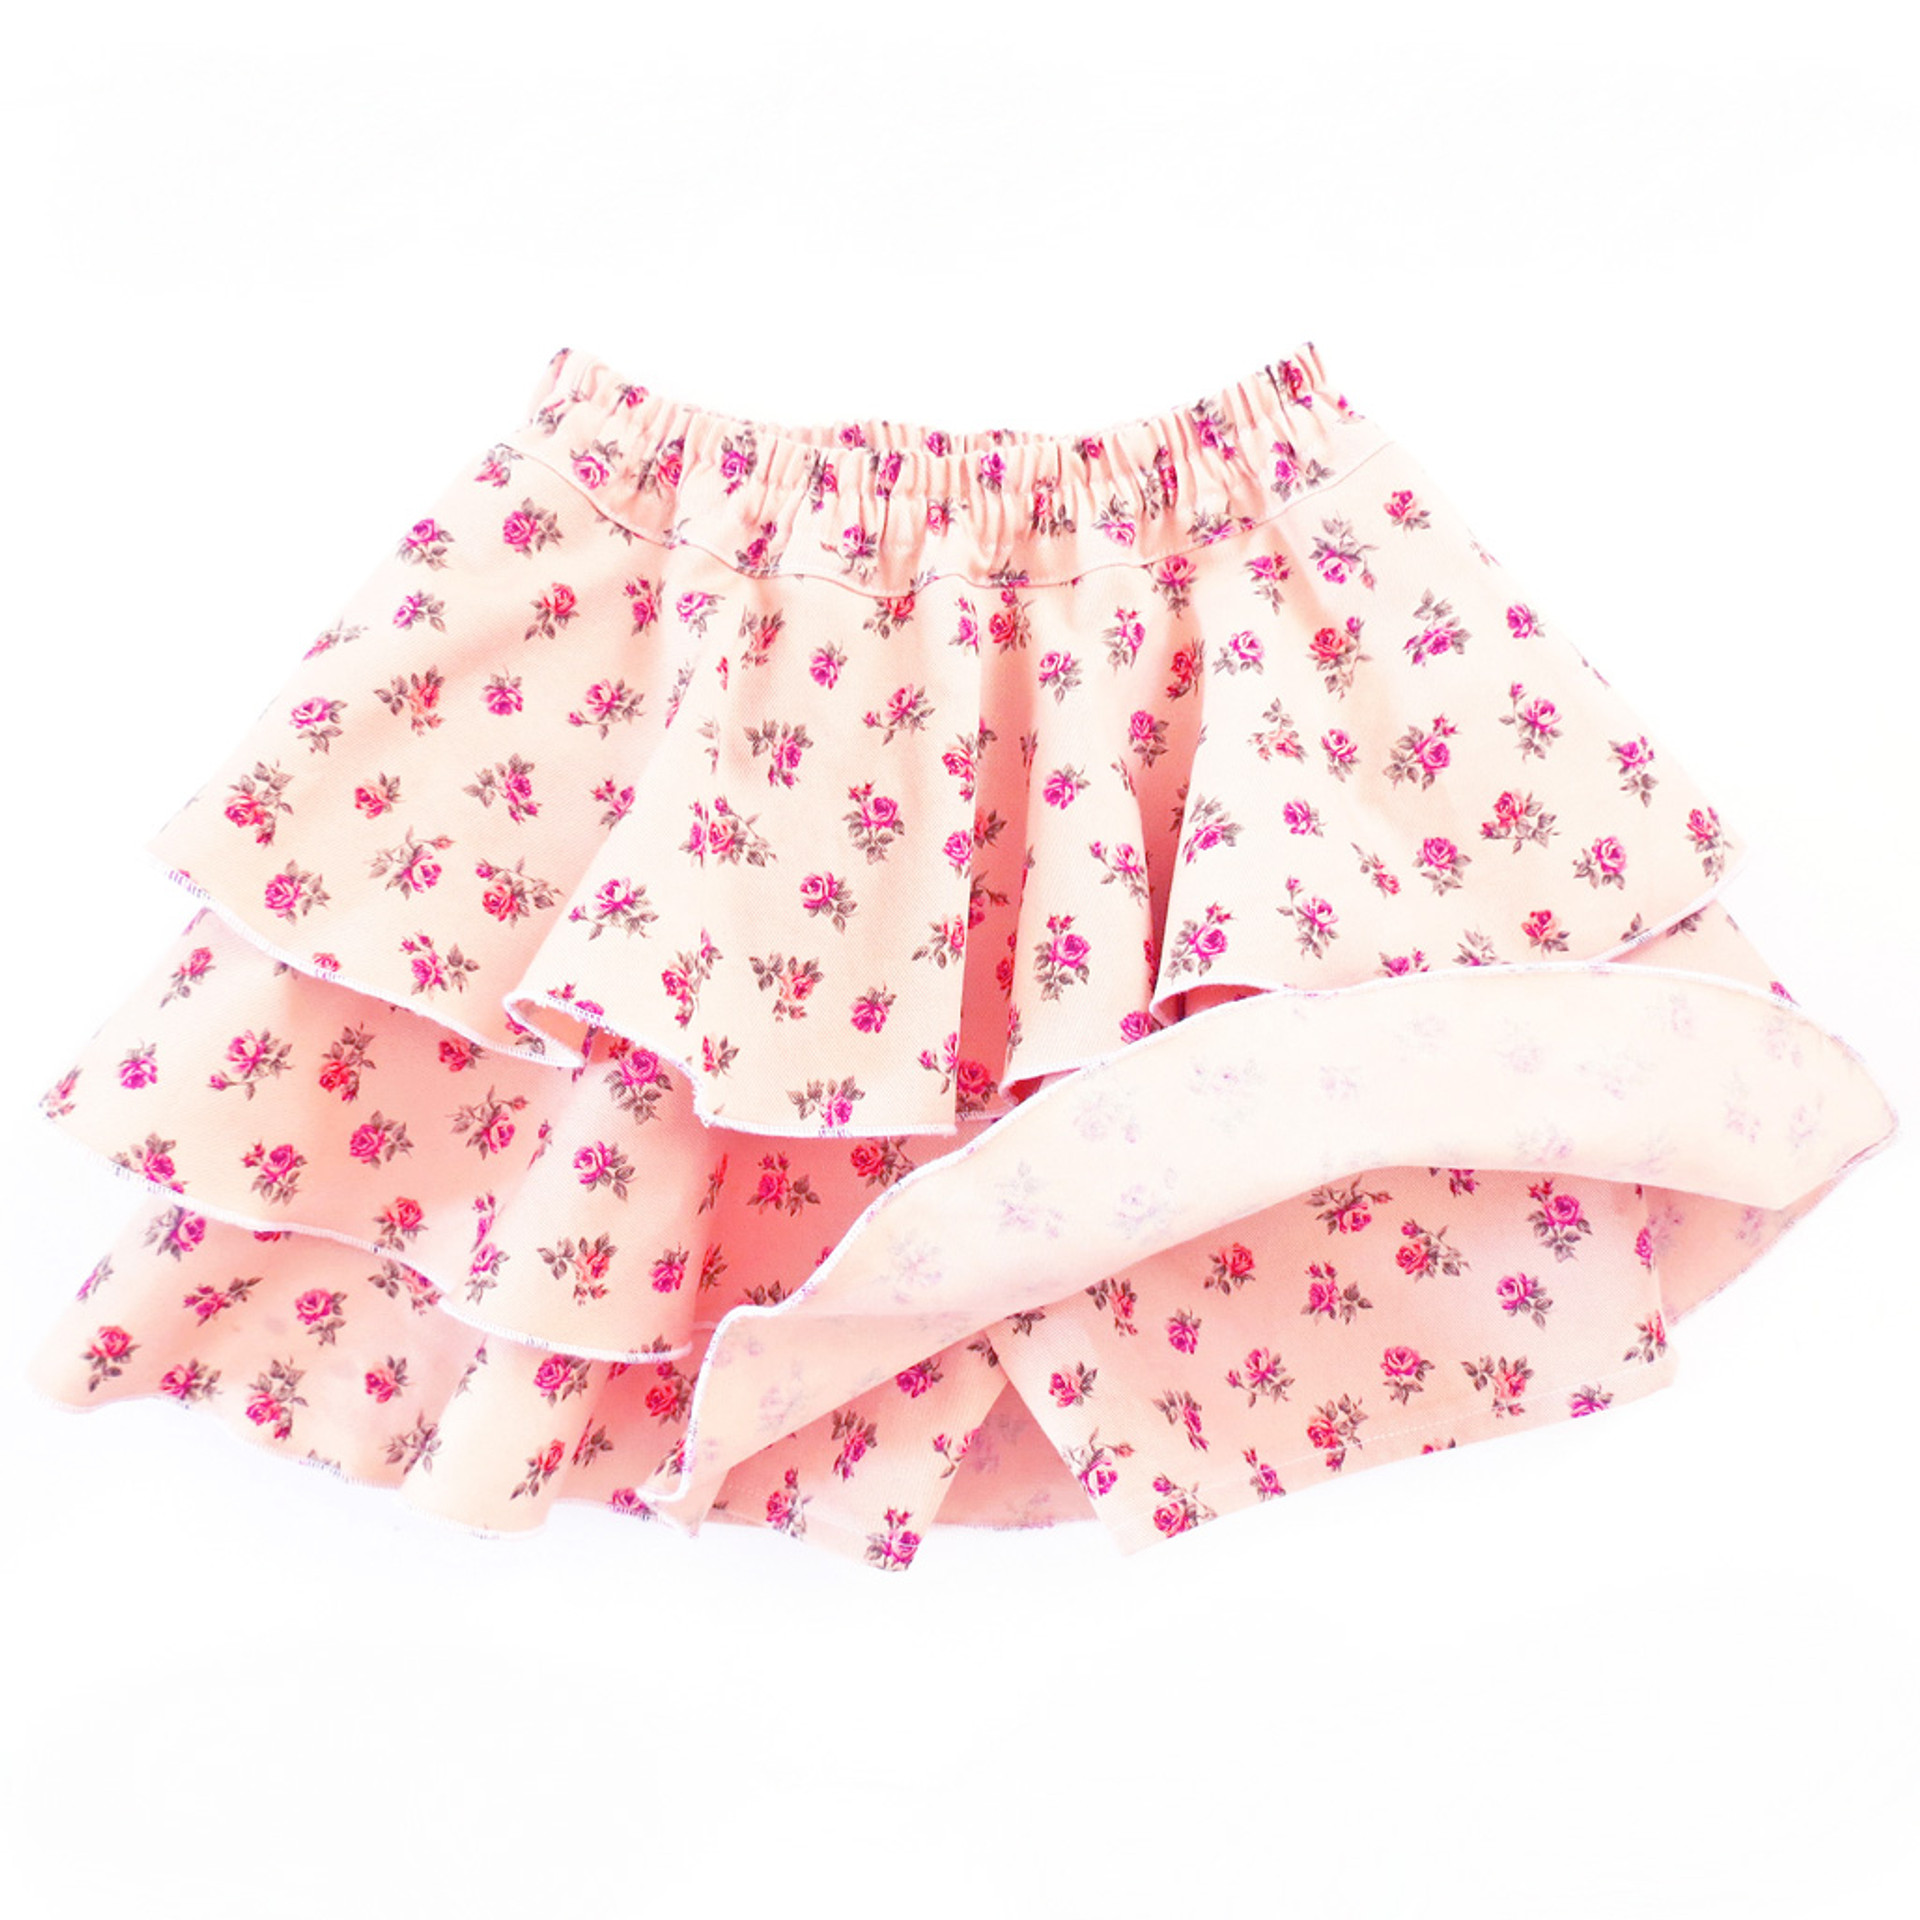 Emma skort shorts skirt pattern for toddler, girls.